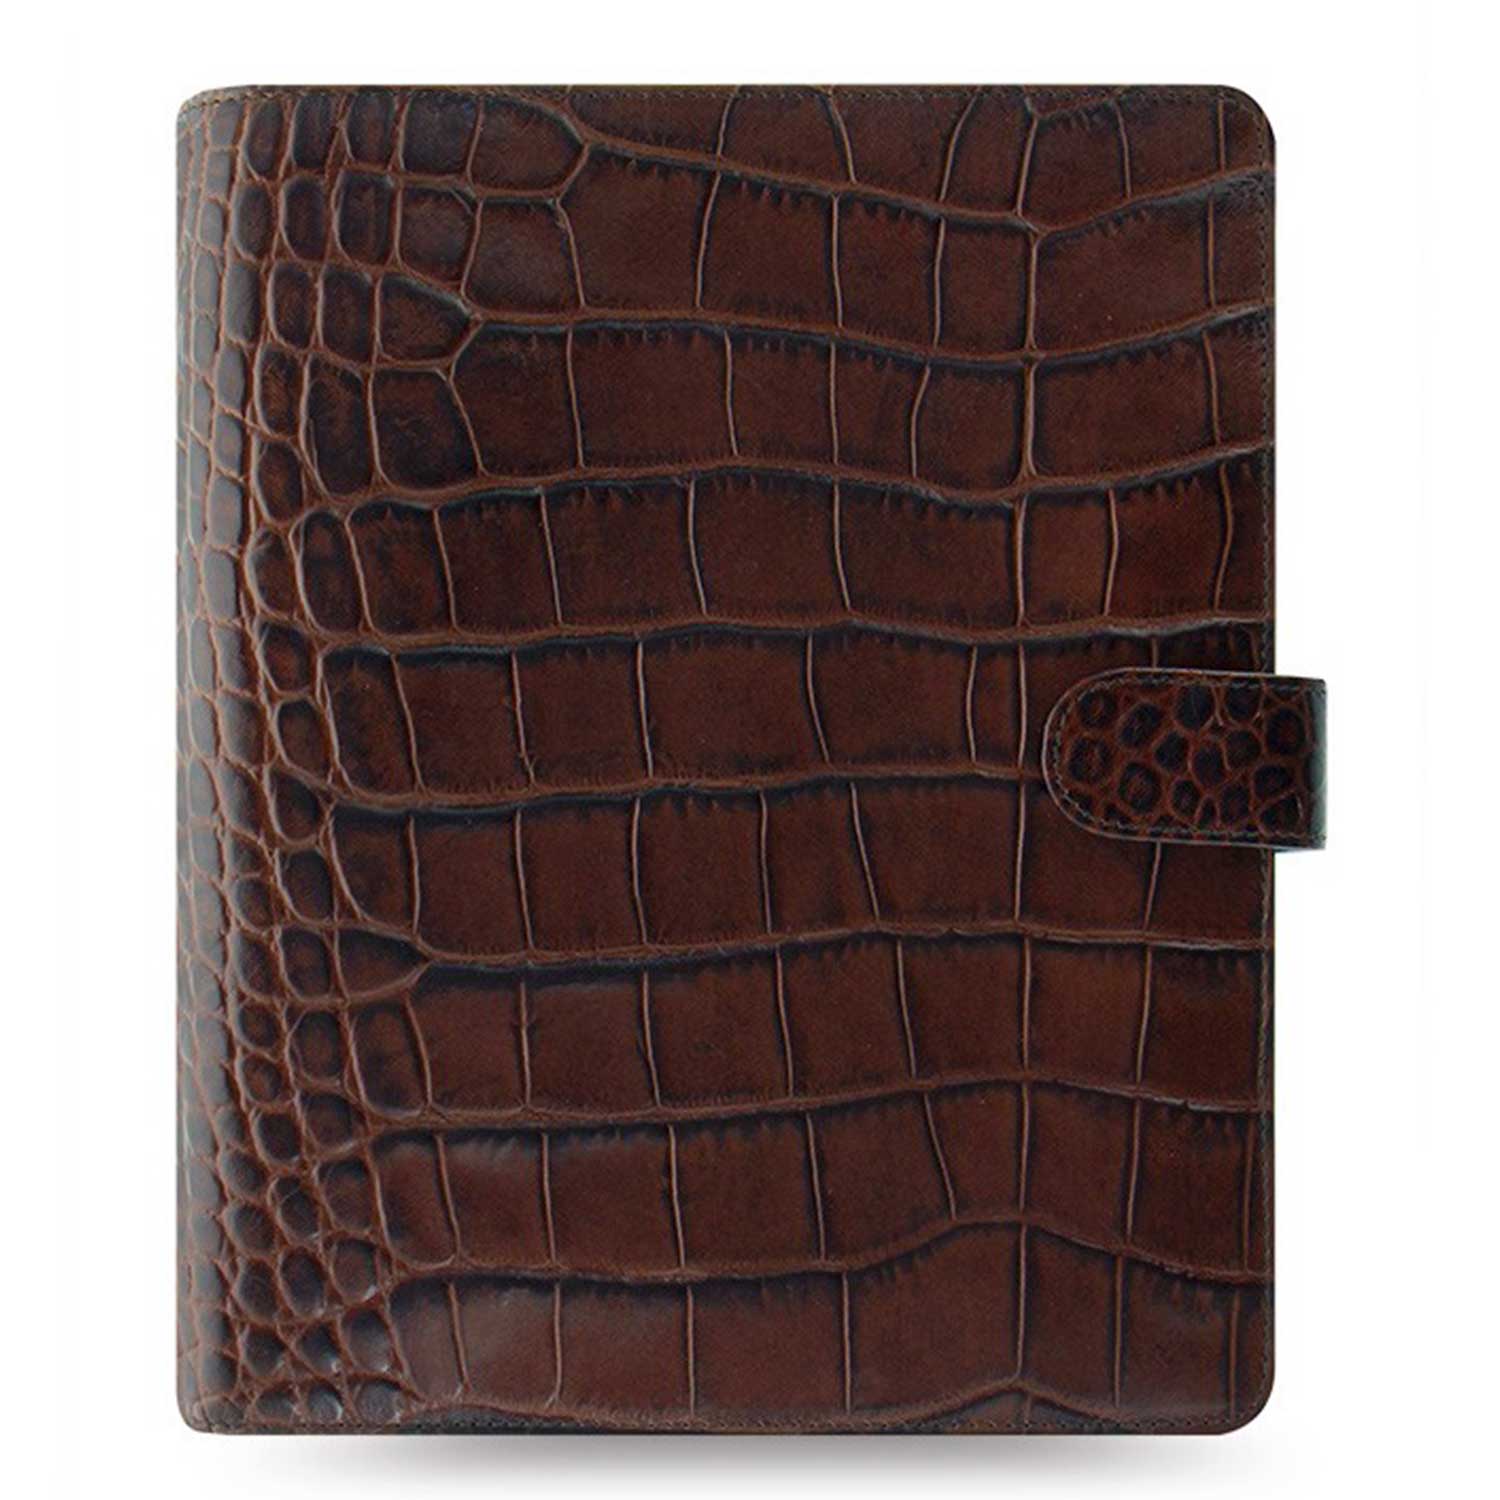 Filofax Classic Croc A5 Chestnut Leather Organizer Agenda 2023/24 Diary